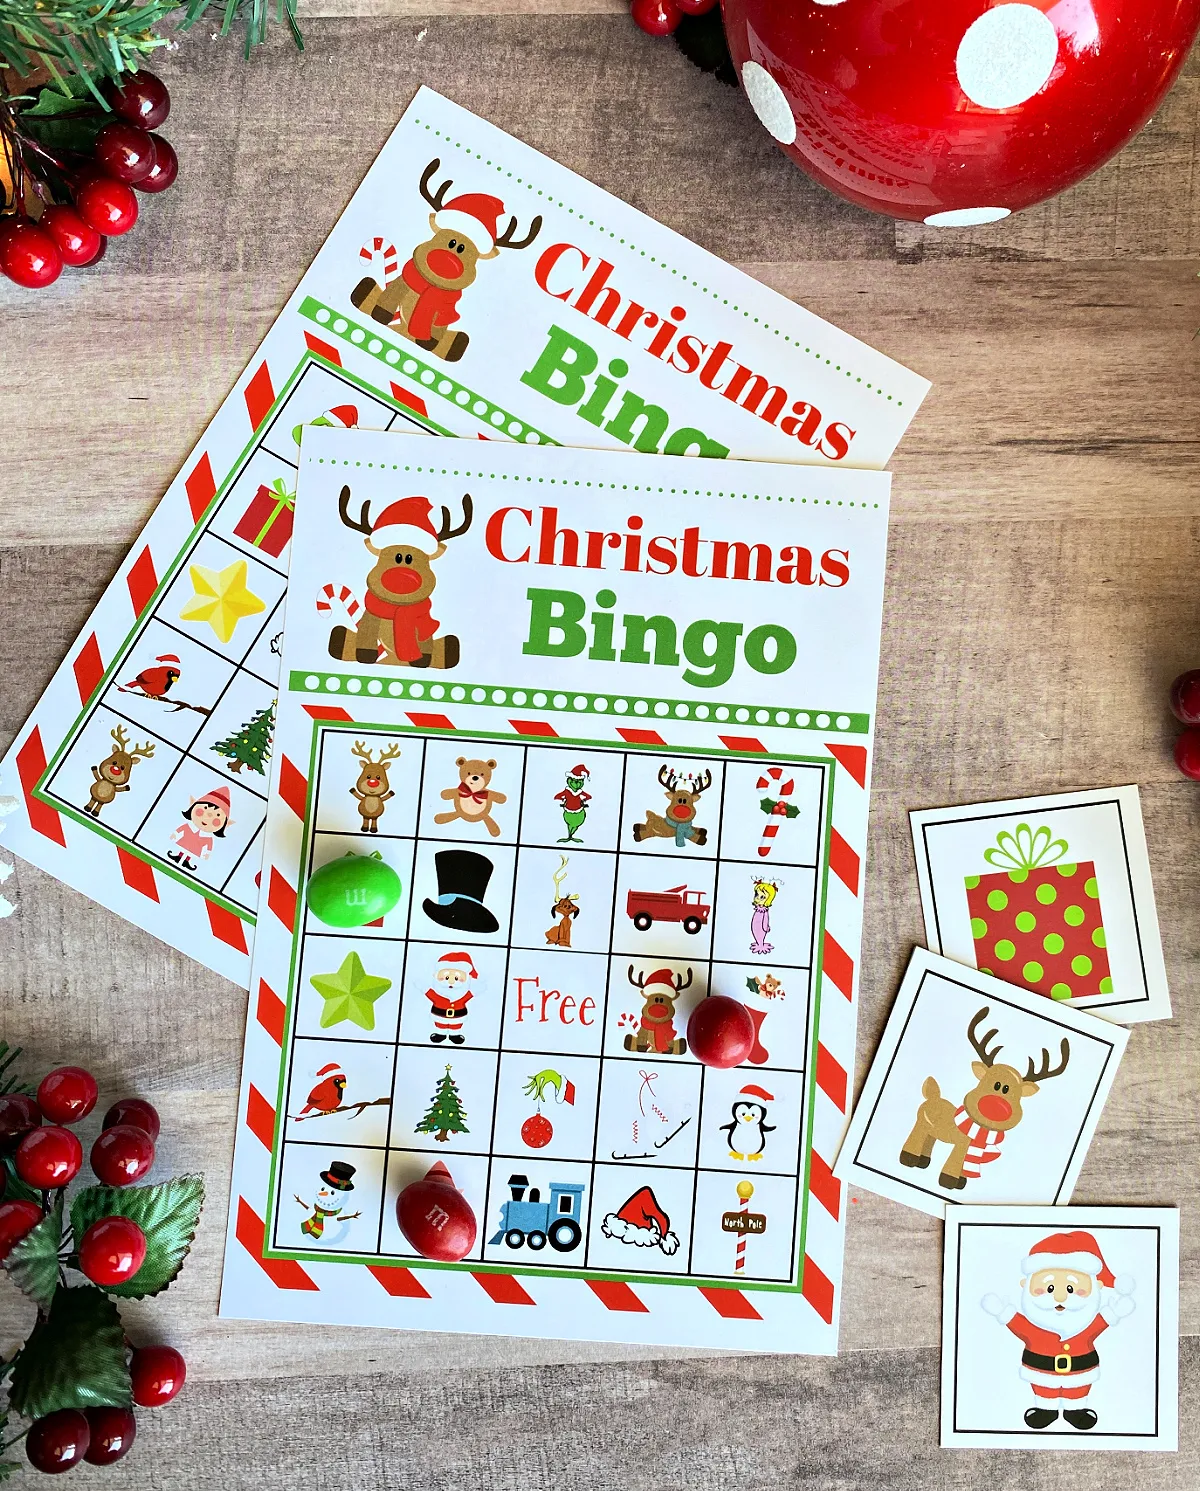 Fun-Christmas Bingo Printable Pages!